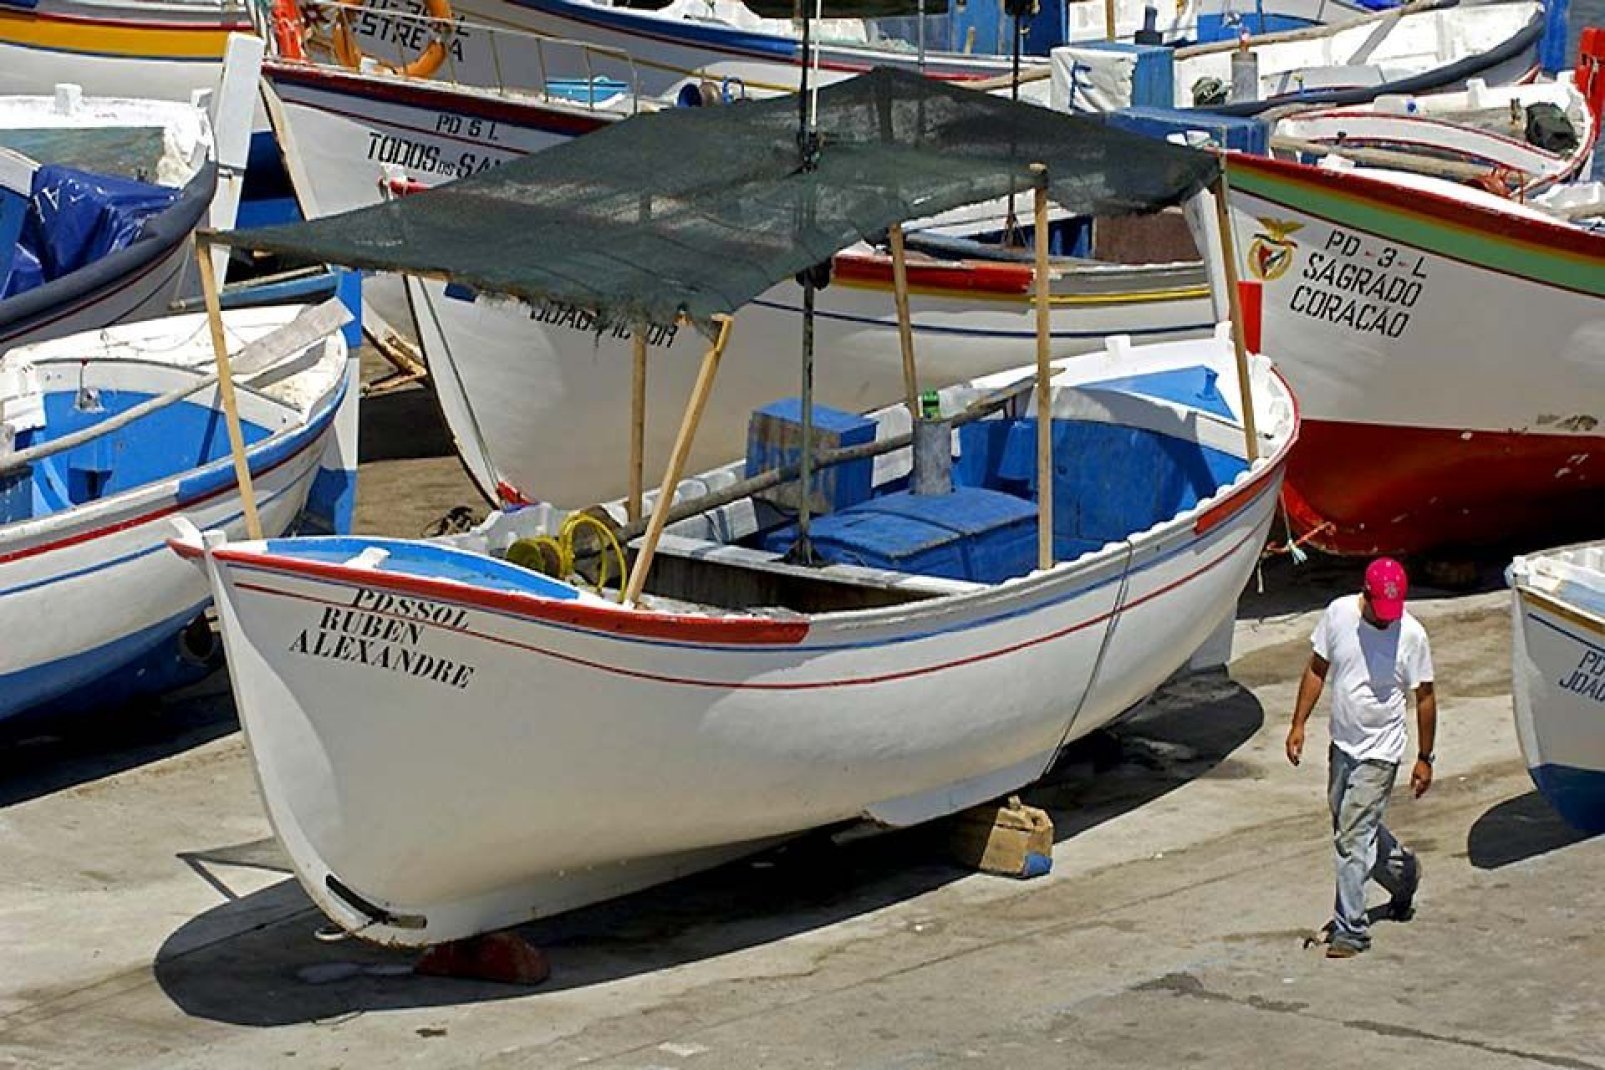 Ponta Delgada war ursprünglich ein kleines Fischerdorf, und diese Tradition ist erhalten geblieben, wovon die zahlreichen Boote im Hafen zeugen.